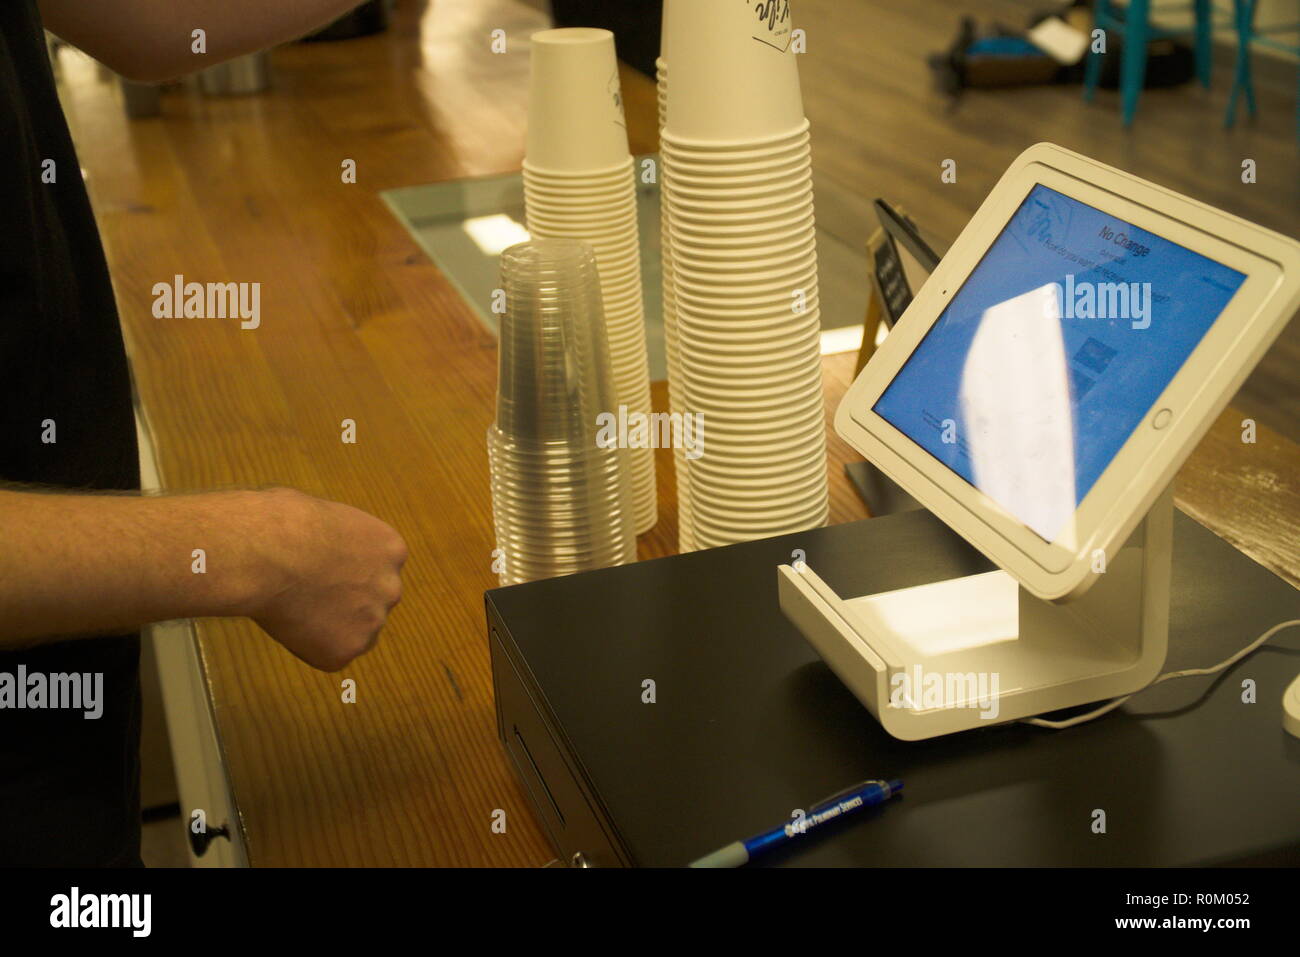 Un barista vérifie un client dans un café. Banque D'Images